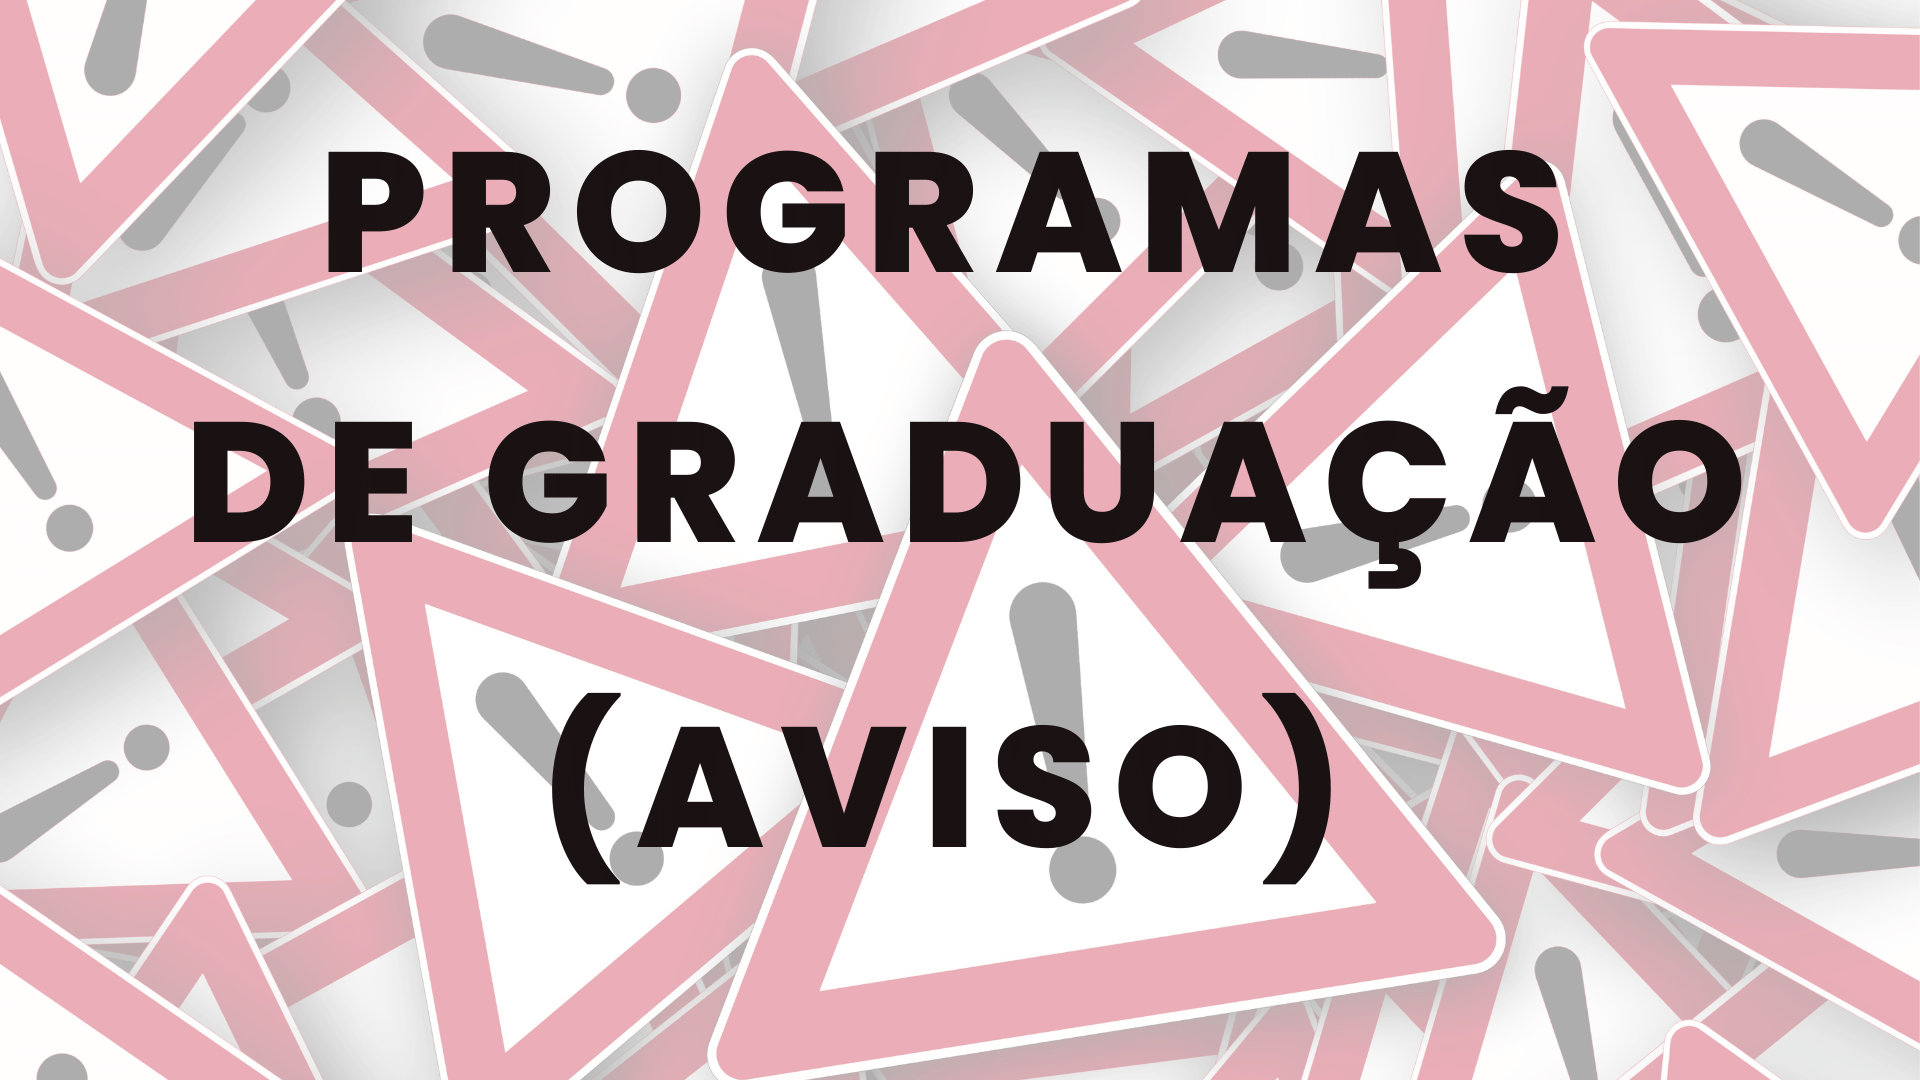 Programas de Graduação (aviso)